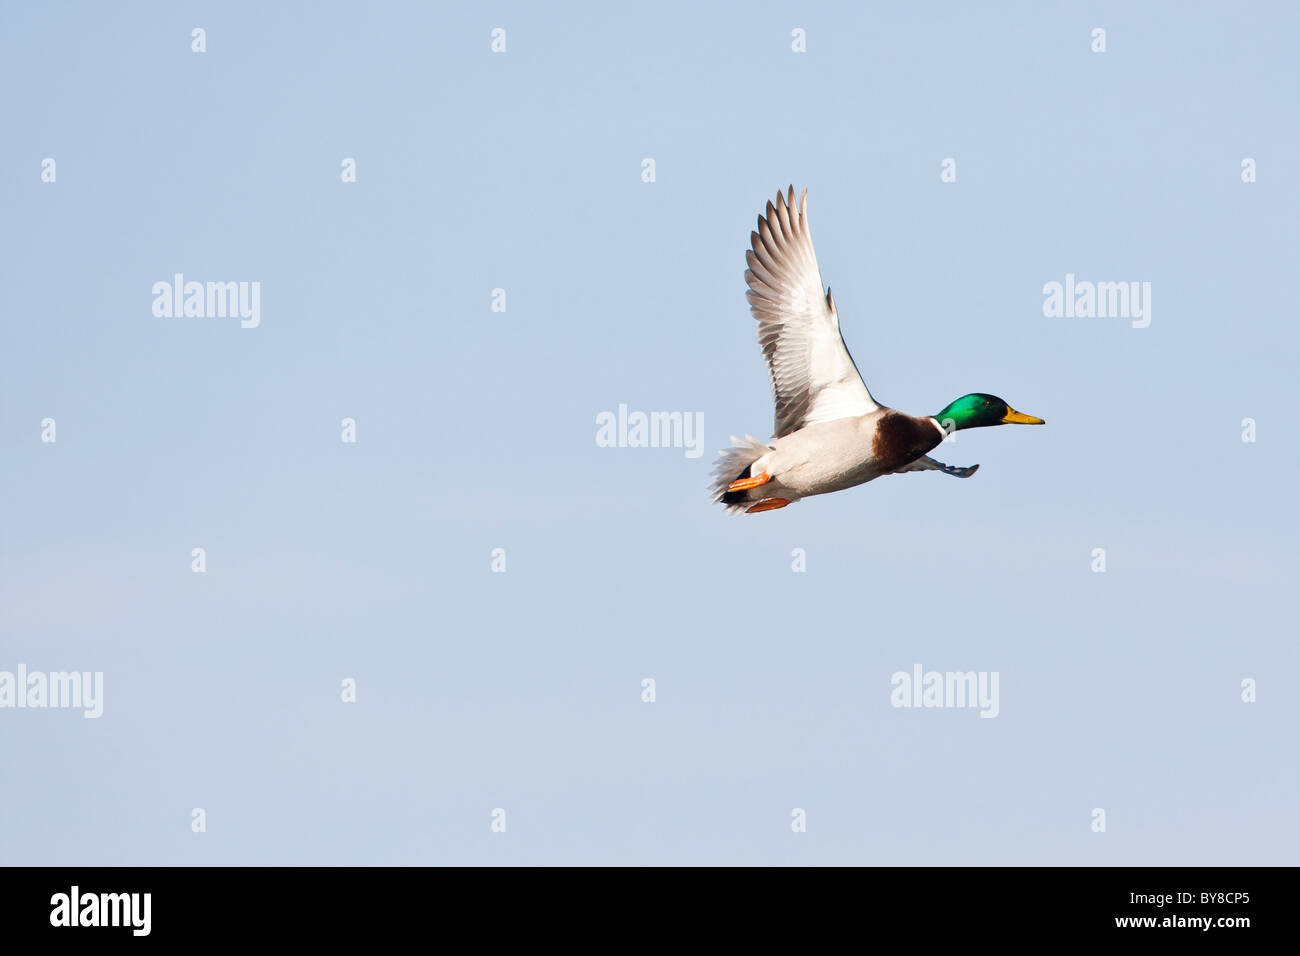 Male mallard duck in flight against a clear blue sky Stock Photo